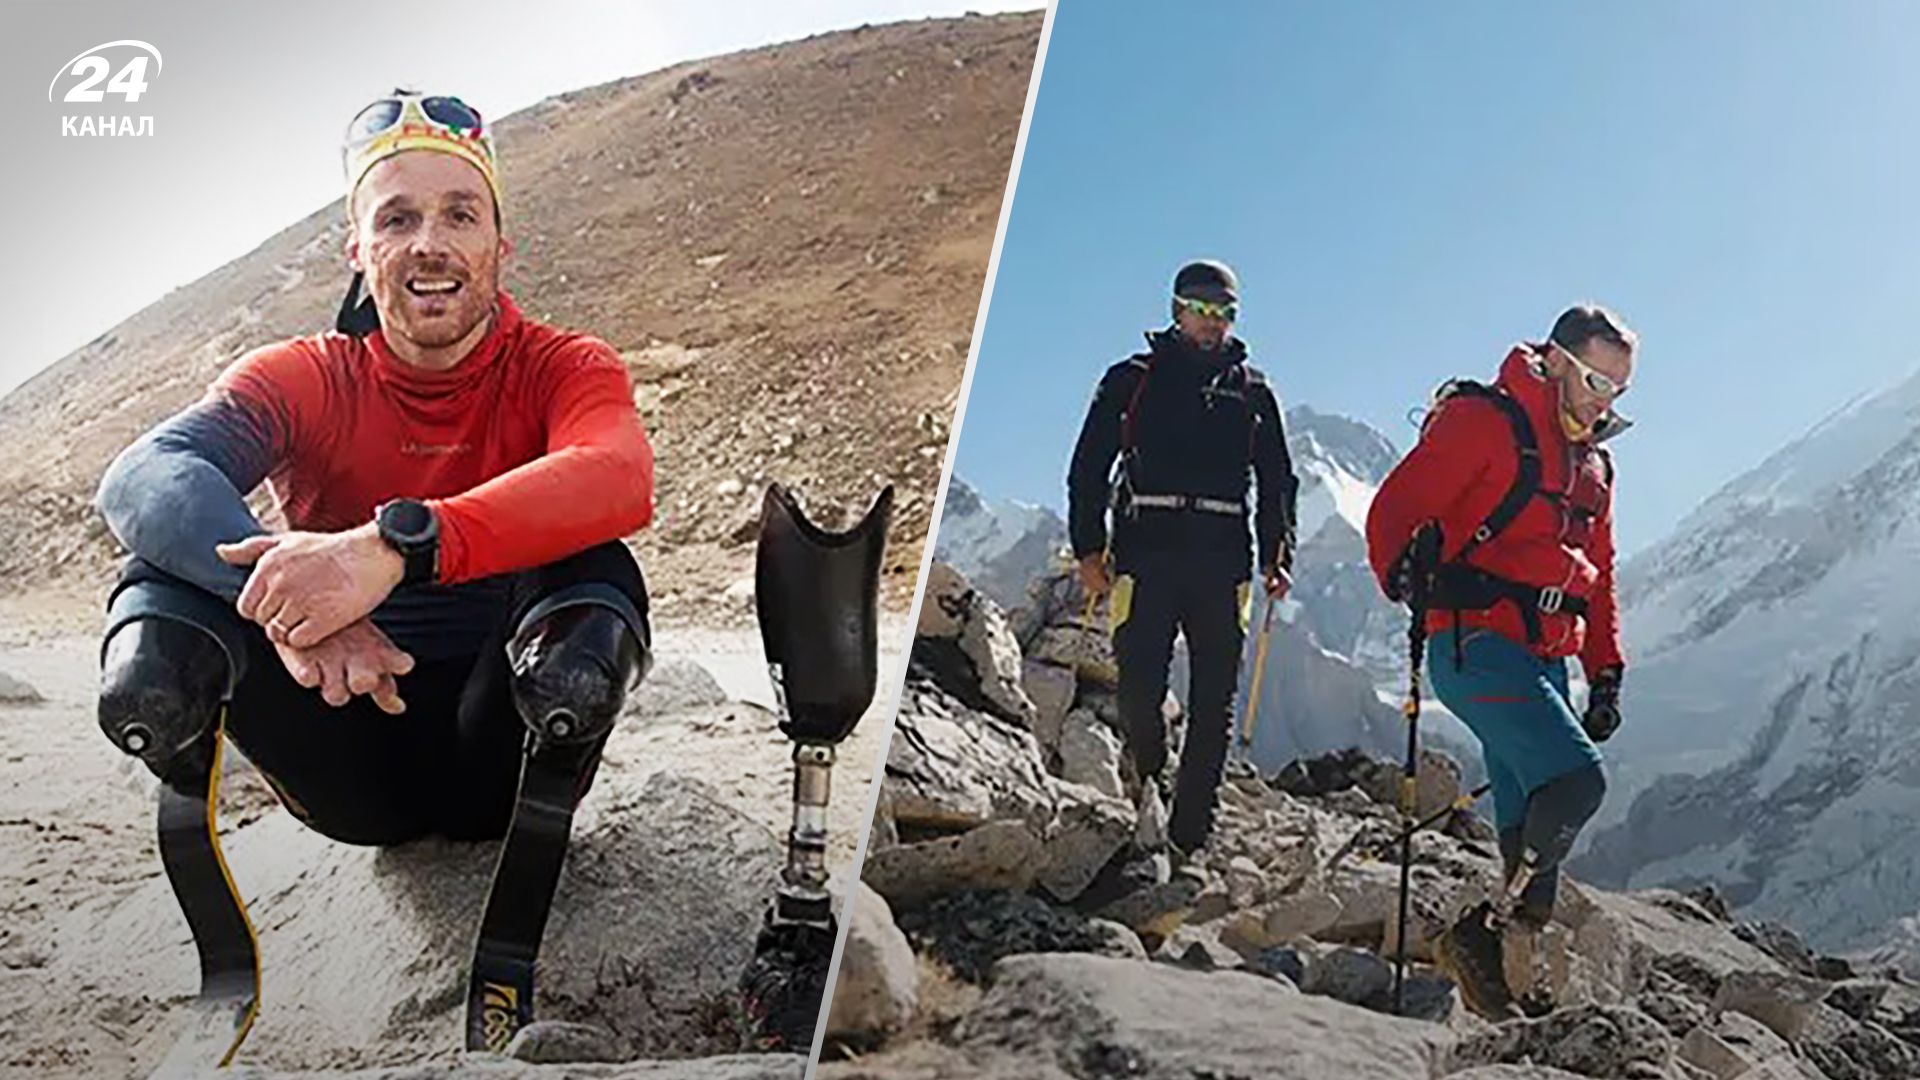 Андреа Ланфри покорил Эверест с множественными ампутированными конечностями